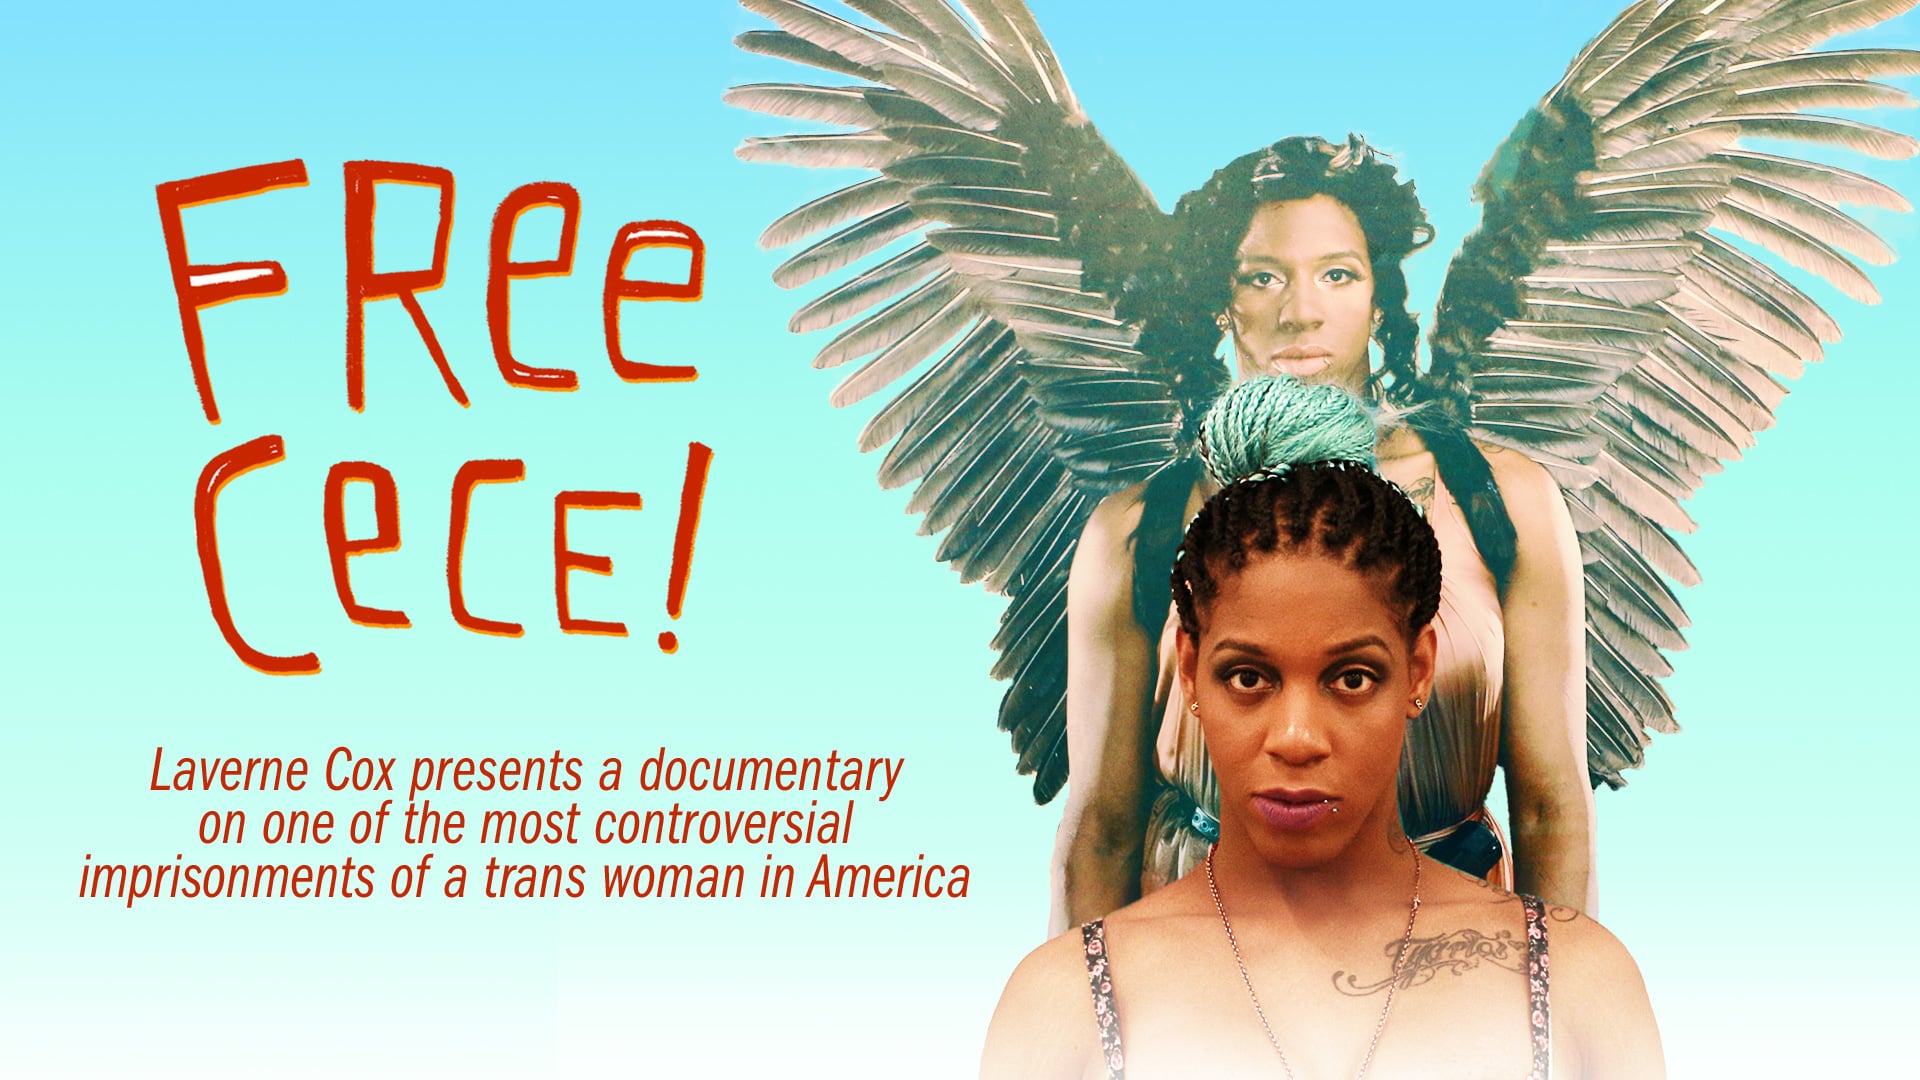 Watch FREE CeCe! Online Vimeo On Demand on Vimeo